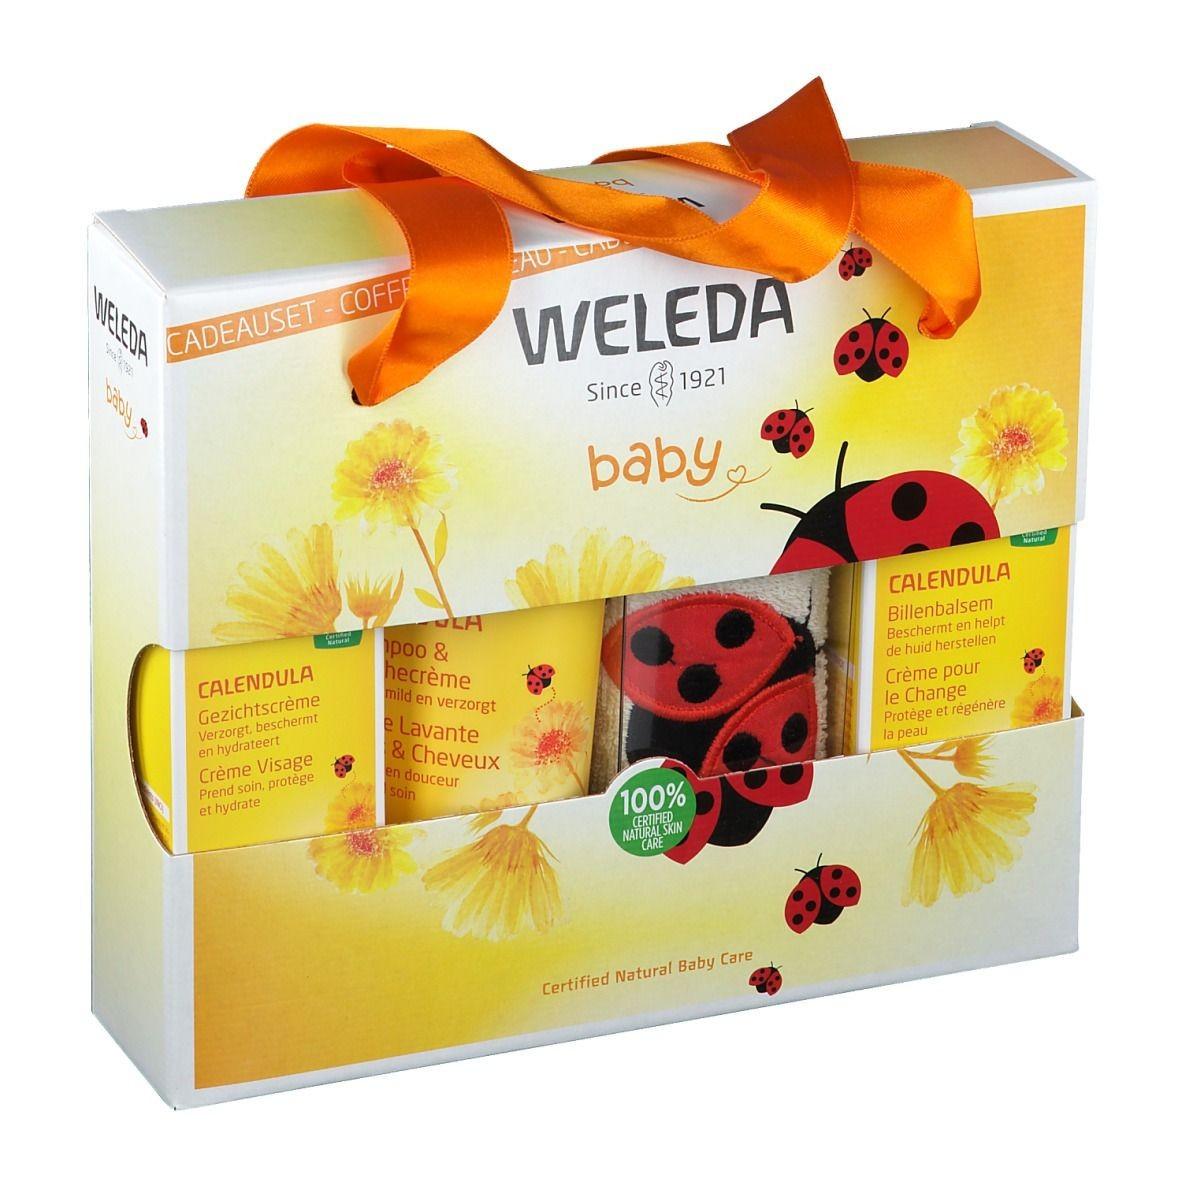 Weleda - Weleda verzogring voor jouw baby - Cadeauset